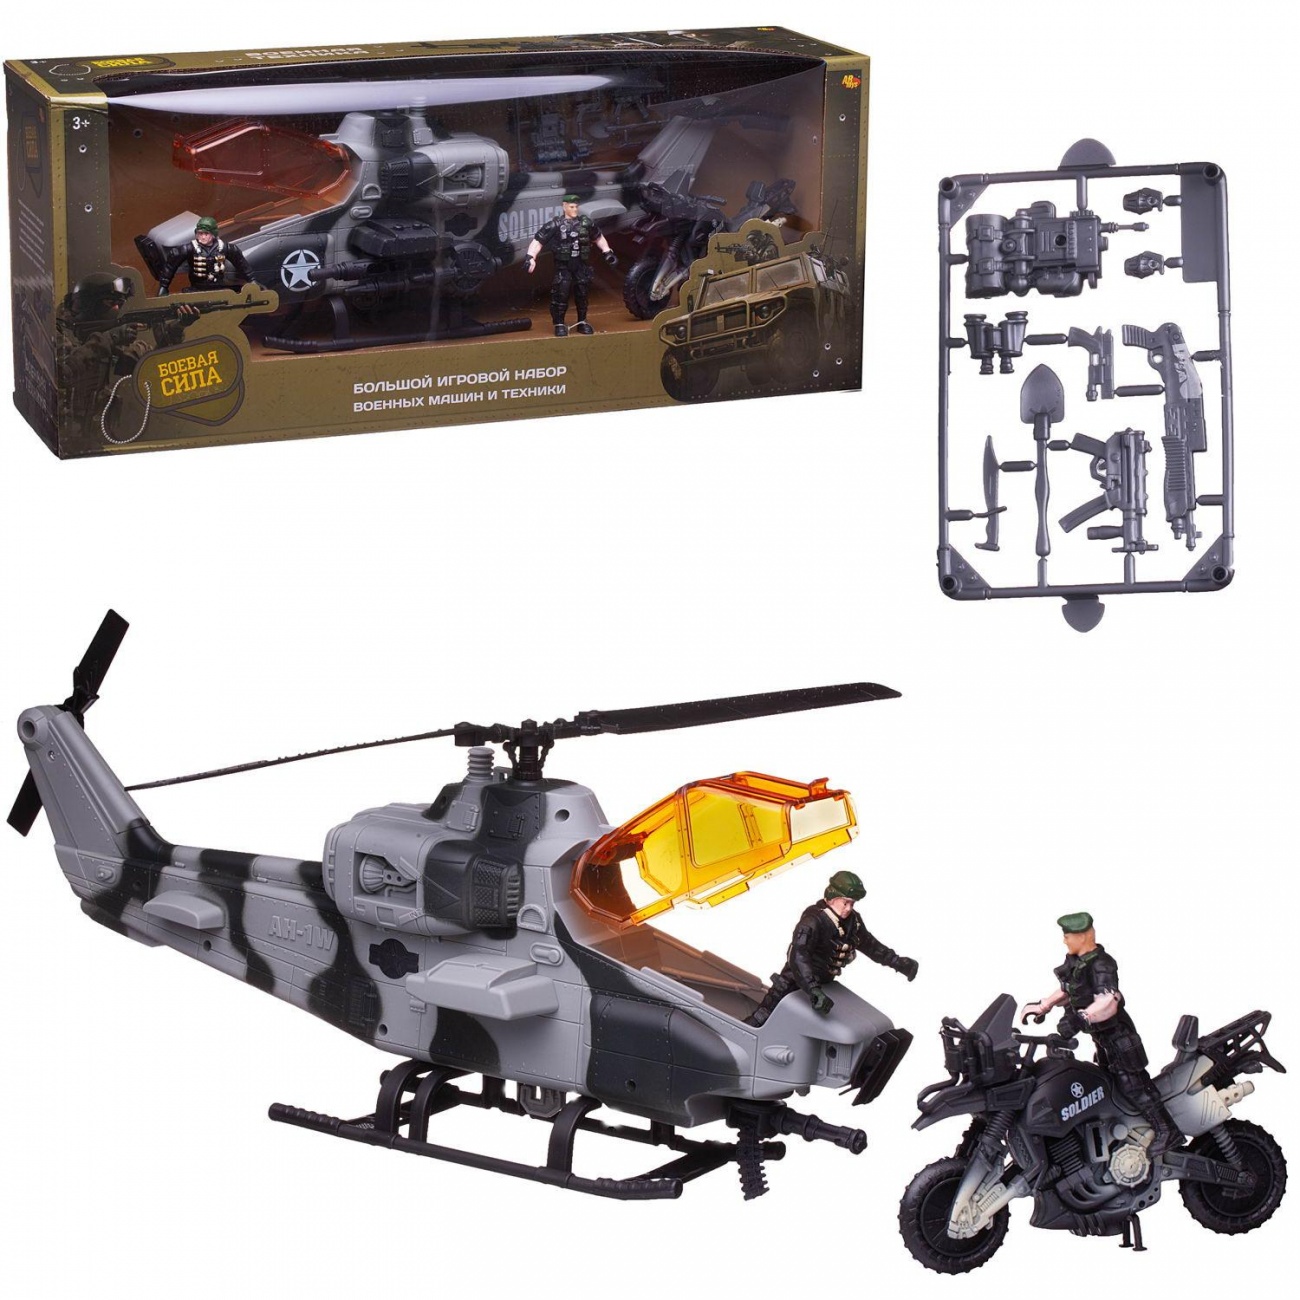 Игровой набор Abtoys Боевая сила: вертолет, мотоцикл, 2 фигурки солдат PT-01667